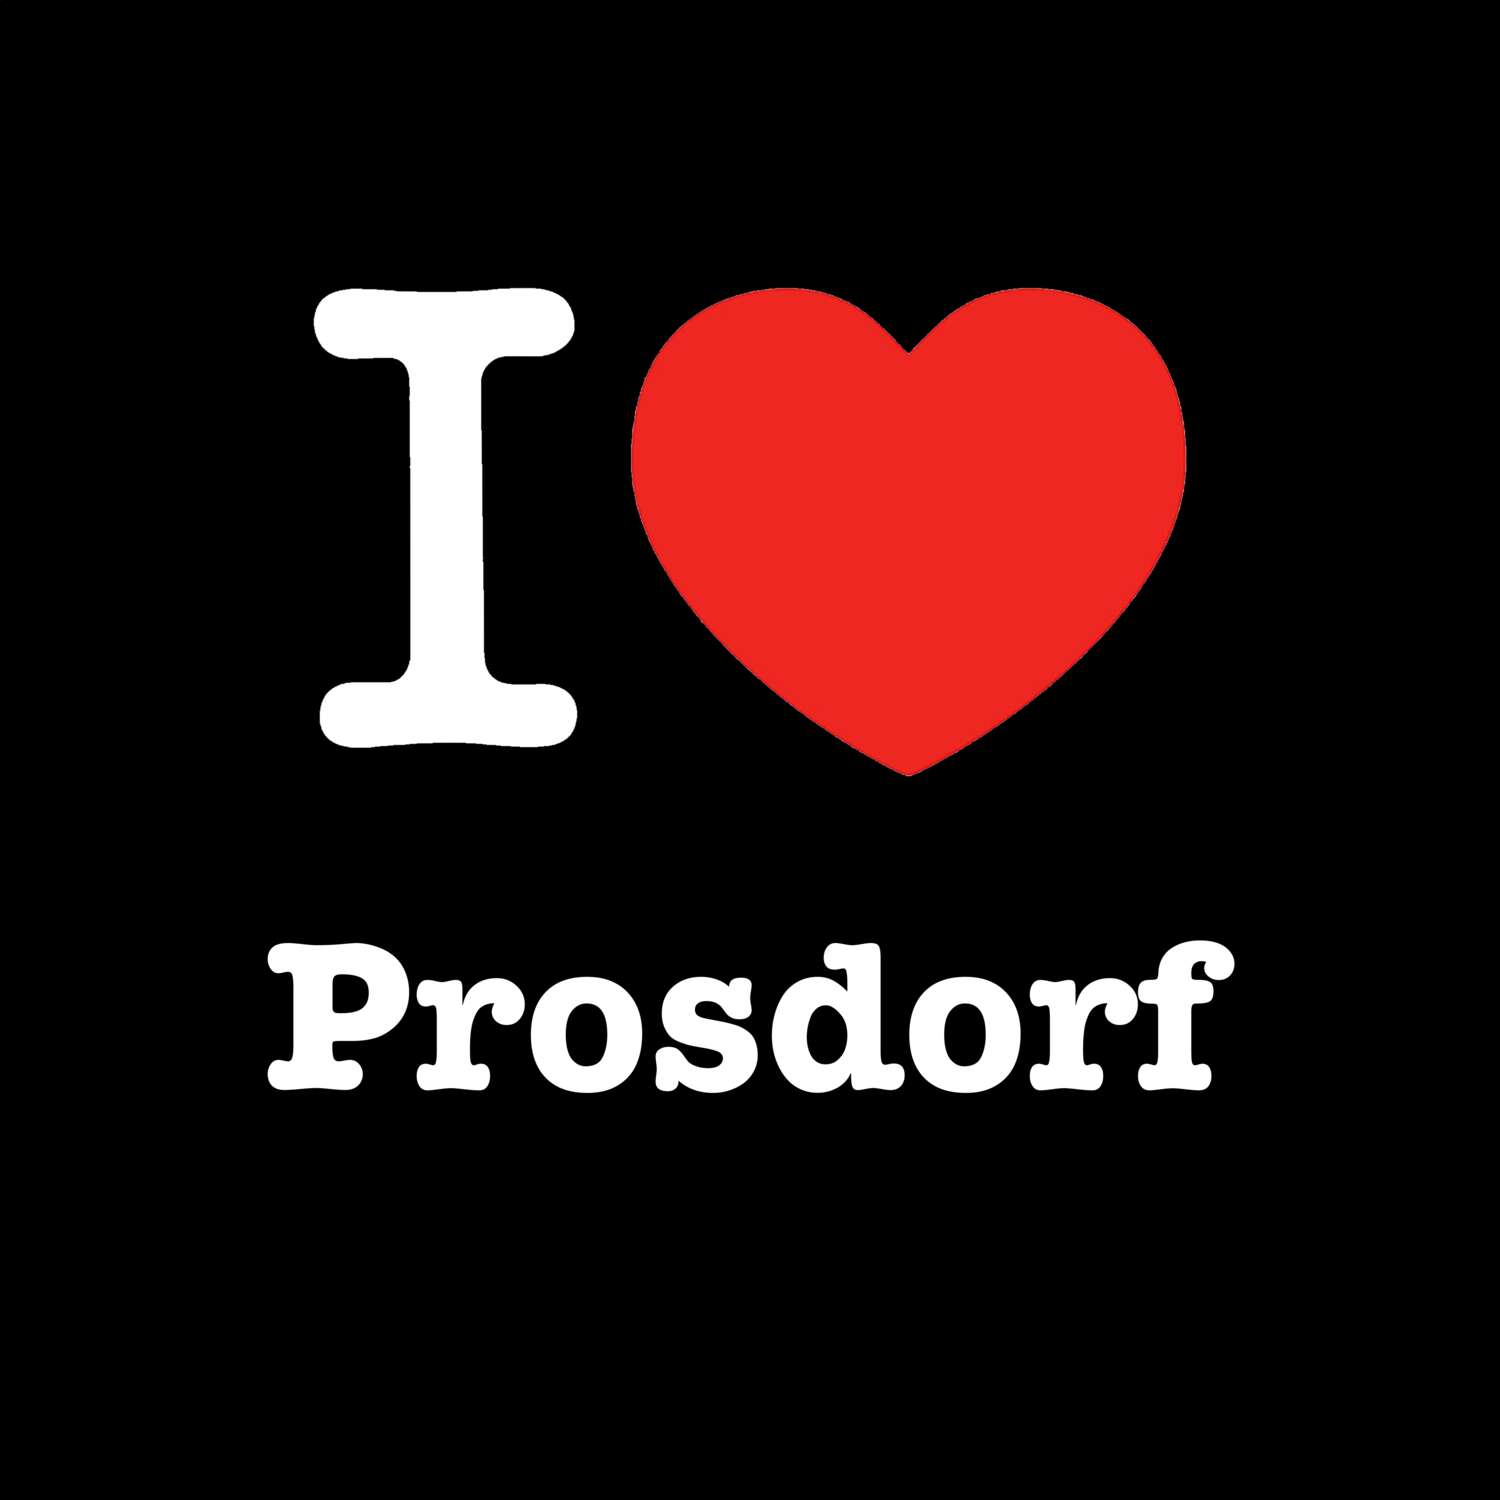 Prosdorf T-Shirt »I love«